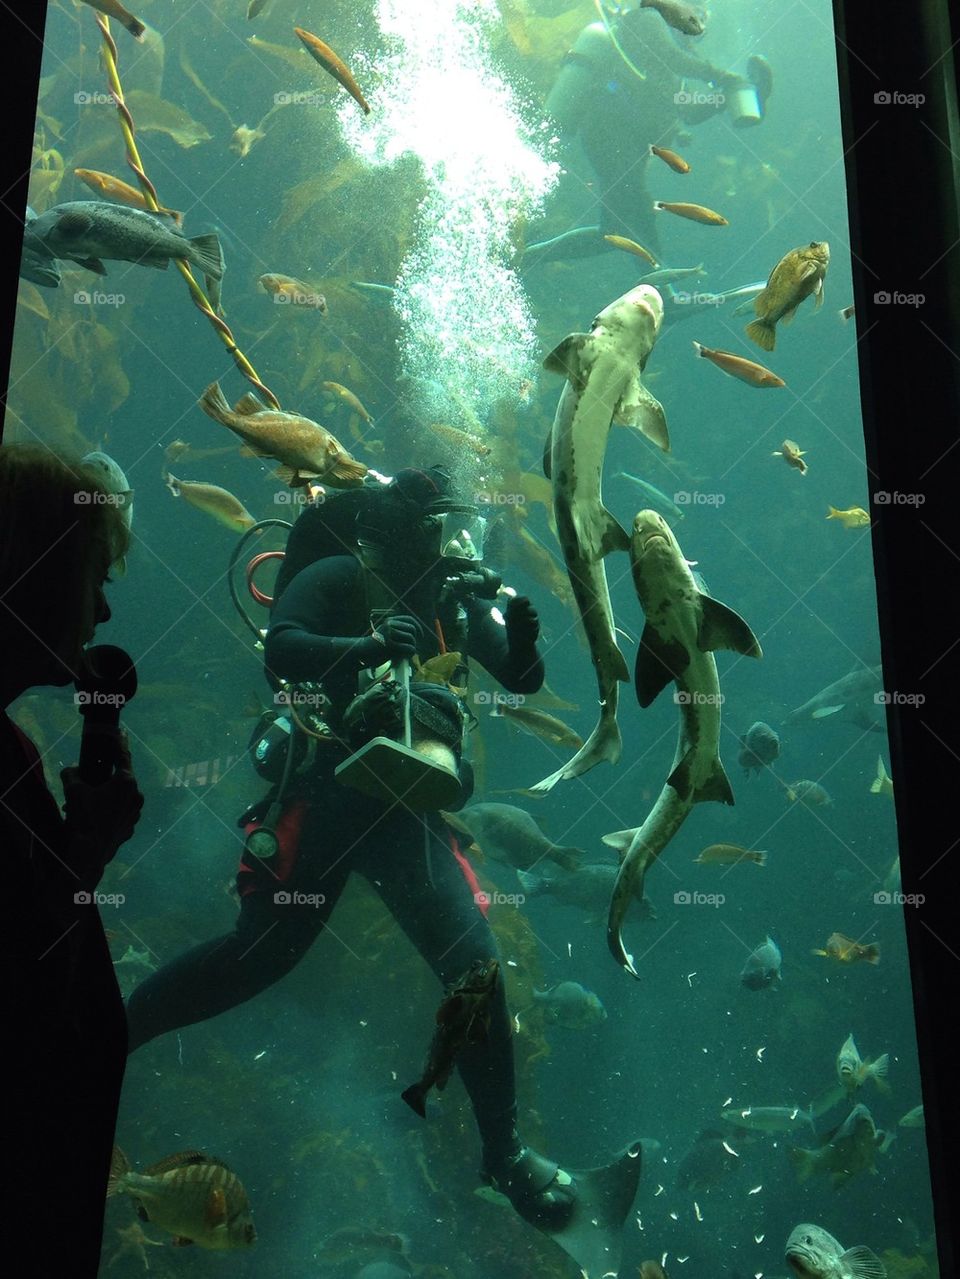 Monterey bay aquarium